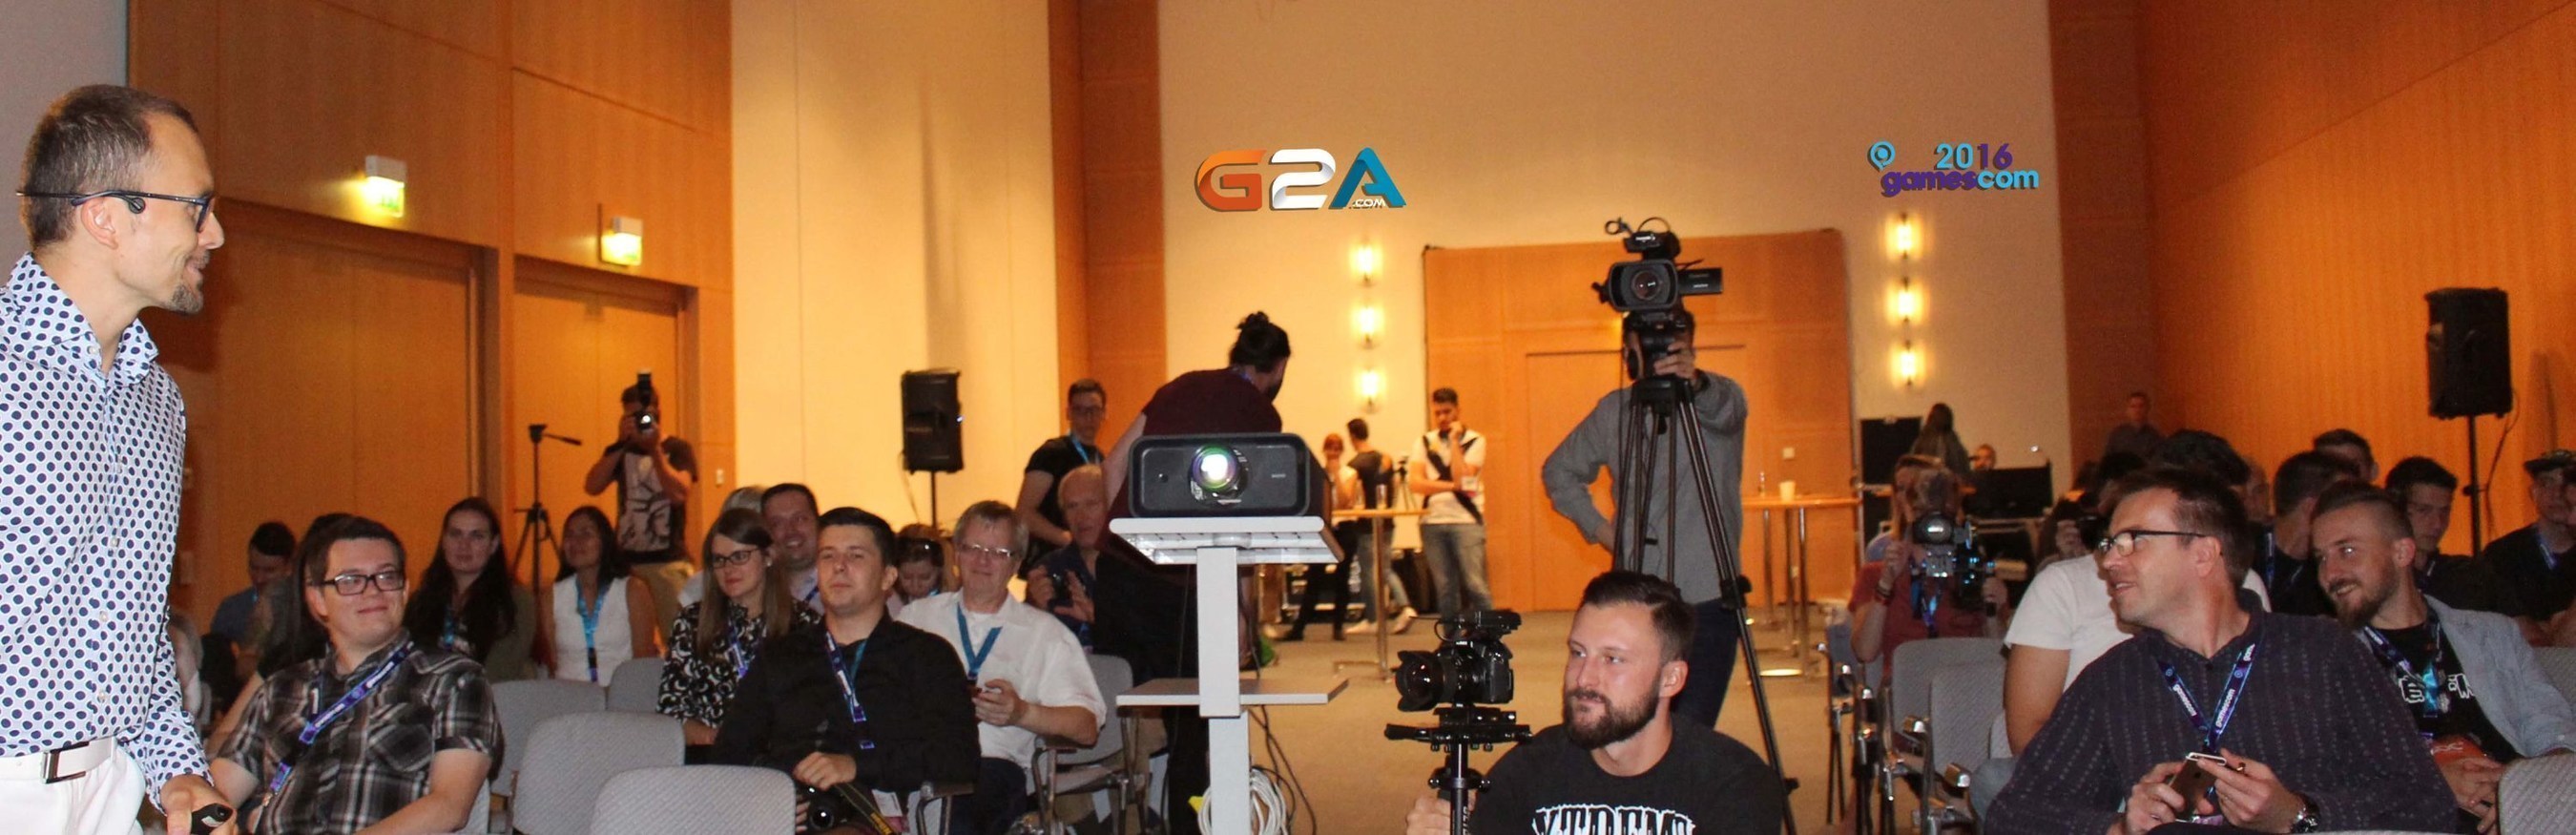 G2A CEO explains G2A Direct,  a world-first for developers at Gamescom 2016 (PRNewsFoto/G2A.com)